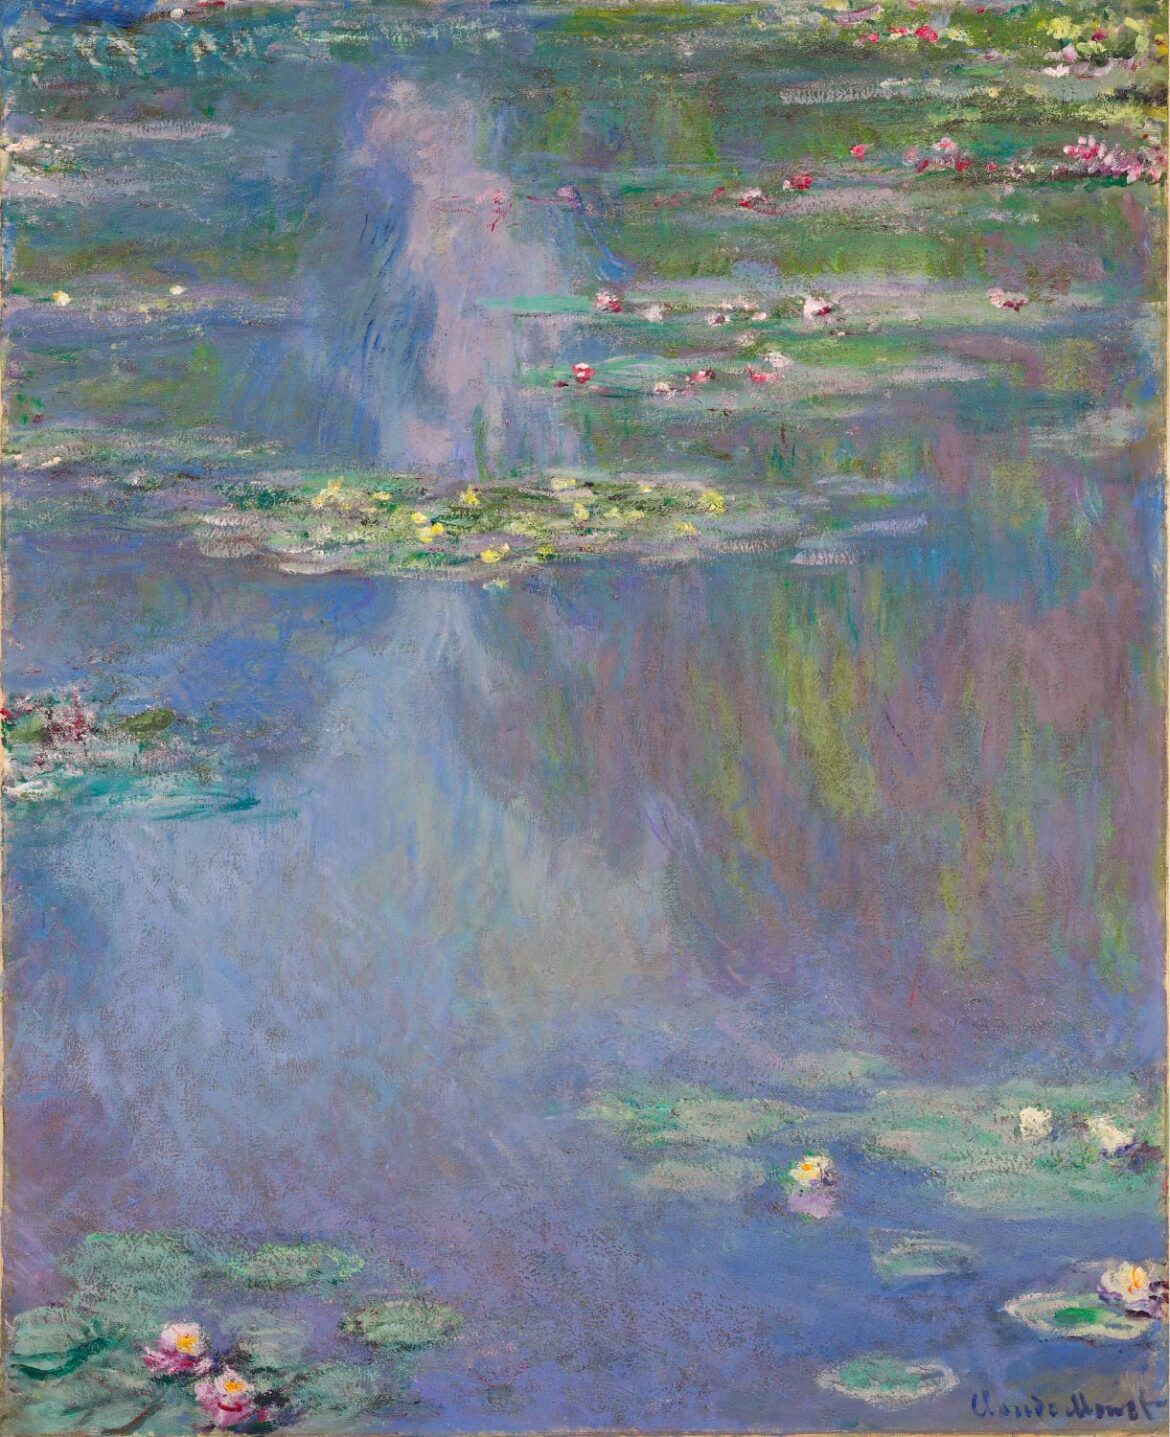 【無料壁紙】クロード・モネ「睡蓮 (1907-A)」 / Claude Monet_Water Lilies (1907-A)